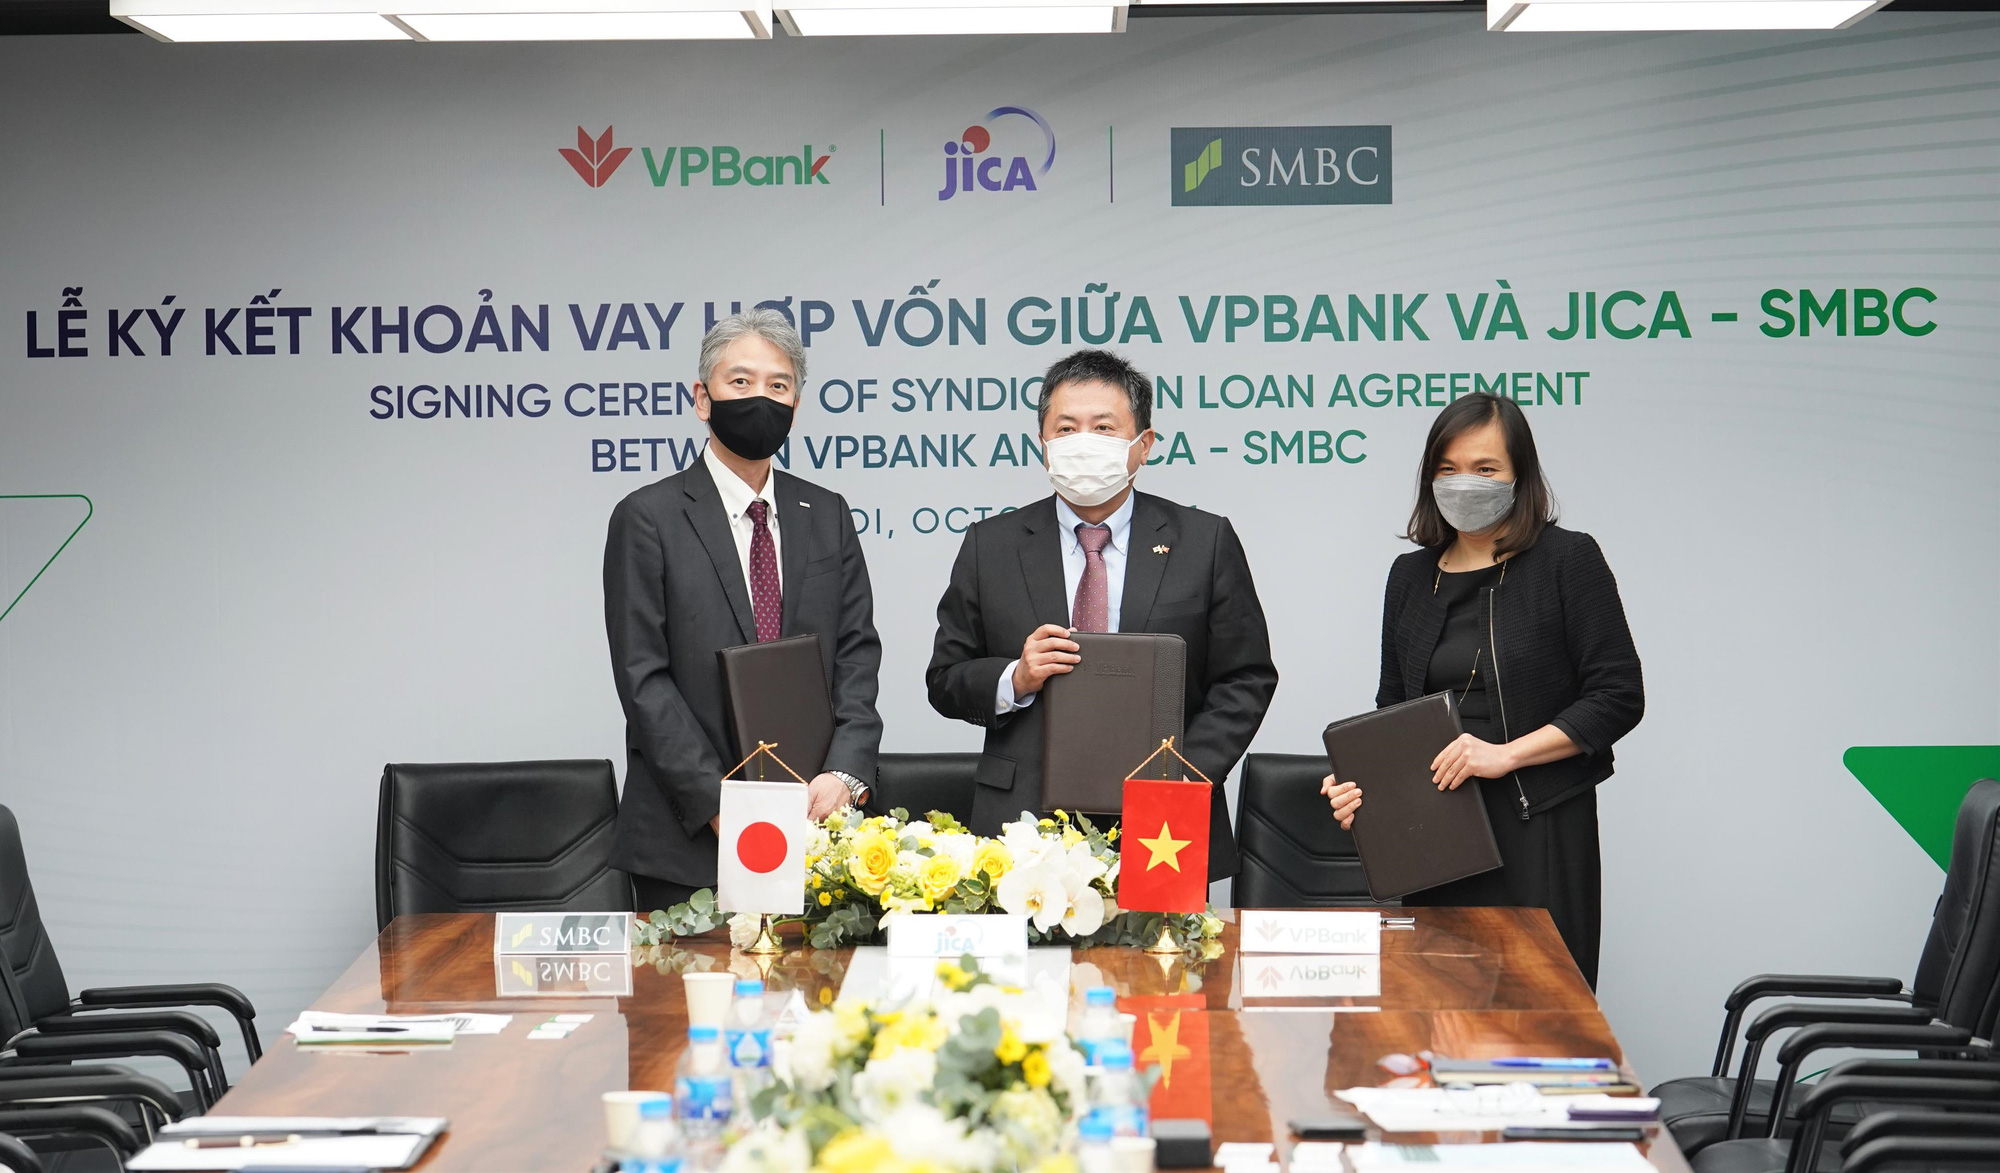 VPBank nhận gói vay hợp vốn 100 triệu USD từ JICA và SMBC - Ảnh 1.